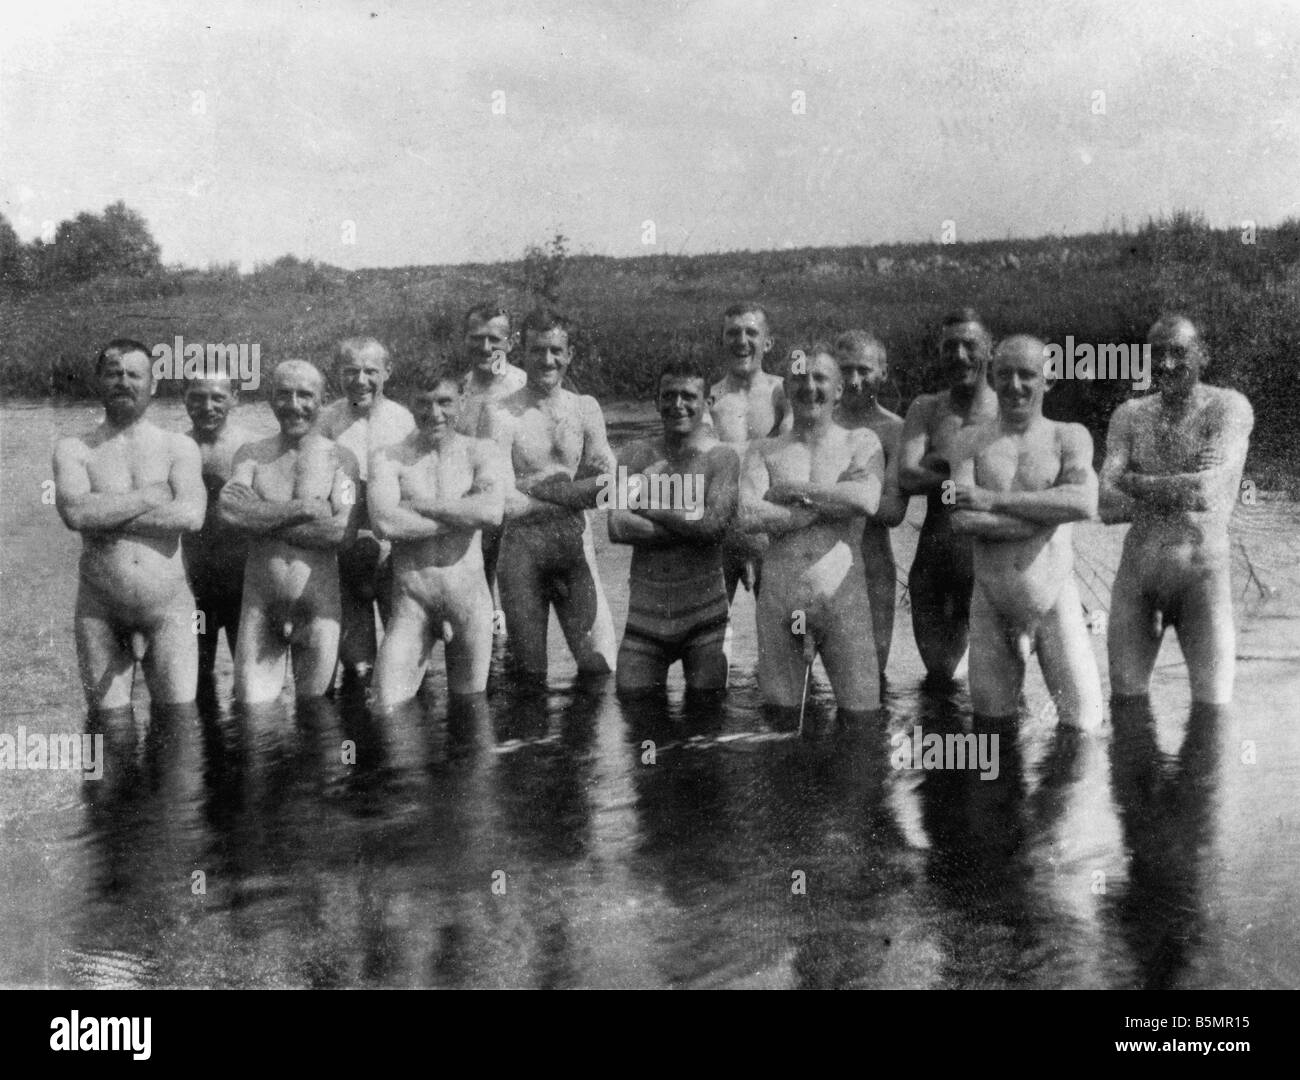 9 1916 7 0 A1 E Moyen-orient Fr Pic de soldats baignoire Pho la Seconde Guerre mondiale, Front de l'Est 1 photo de groupe de soldats se baigner dans Kalwarja West Ga Banque D'Images